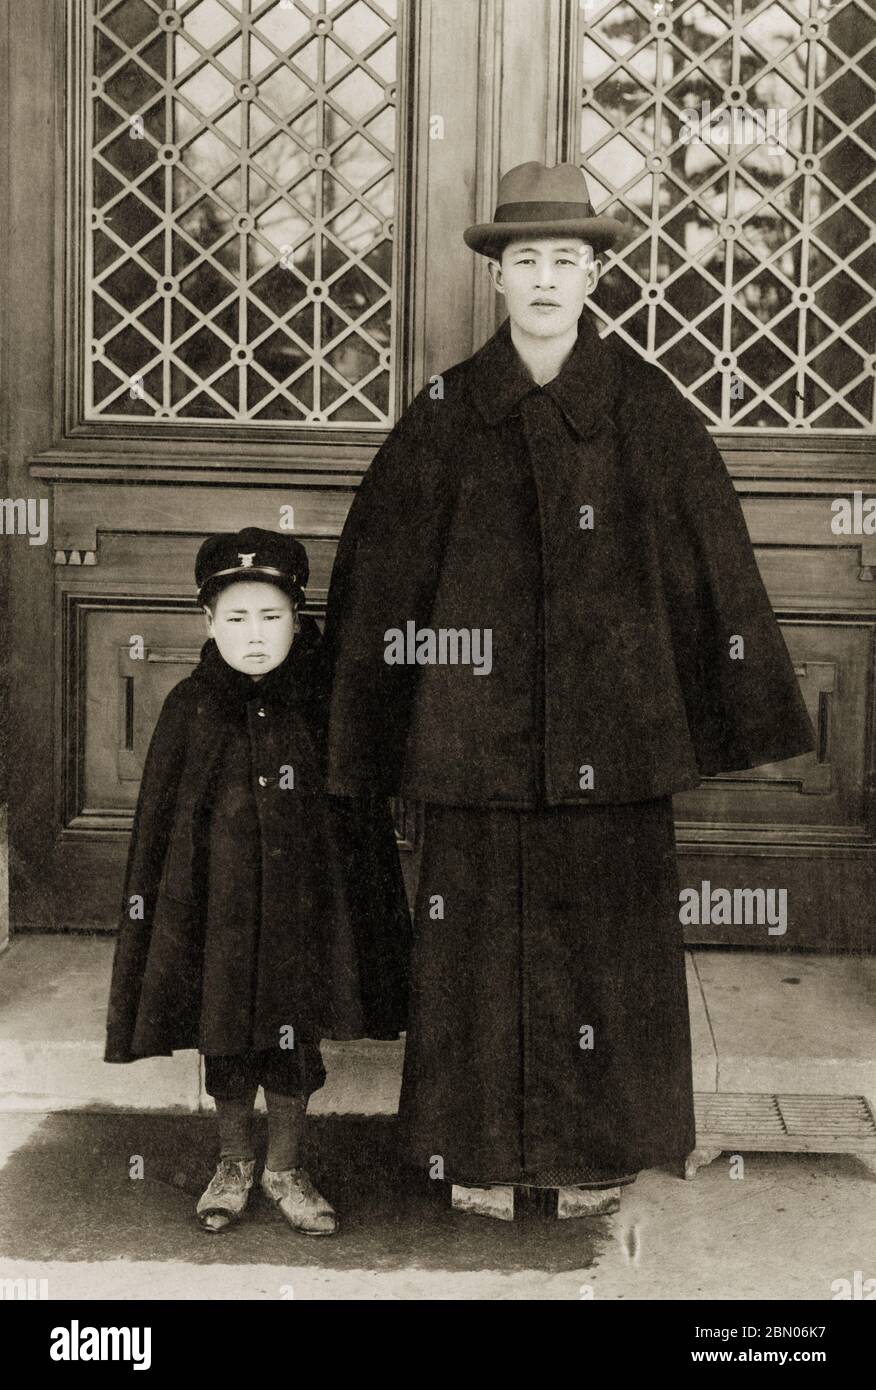 [ Japan der 1920er Jahre - Vater und Sohn in Tonbi Mantel ] - EIN Vater und sein Sohn, beide tragen einen Inverness Stil Tonbi Mantel (とんびコート). Der Tonbi Mantel, eine perfekte Fusion aus japanischen und westlichen Stilen, wurde erstmals um 1887 (Meiji 20) eingeführt, erreichte aber seinen Höhepunkt der Popularität während Taisho (1912-1926) und Early Showa (1926-1989). Seine große Popularität ist teilweise auf die Tatsache zurückzuführen, dass es leicht mit traditionellen japanischen Kleidung getragen werden konnte, die große Ärmel zeigte. Der Mantel war besonders bei Intellektuellen beliebt. Silberdruck mit Gelatine aus dem 20. Jahrhundert. Stockfoto